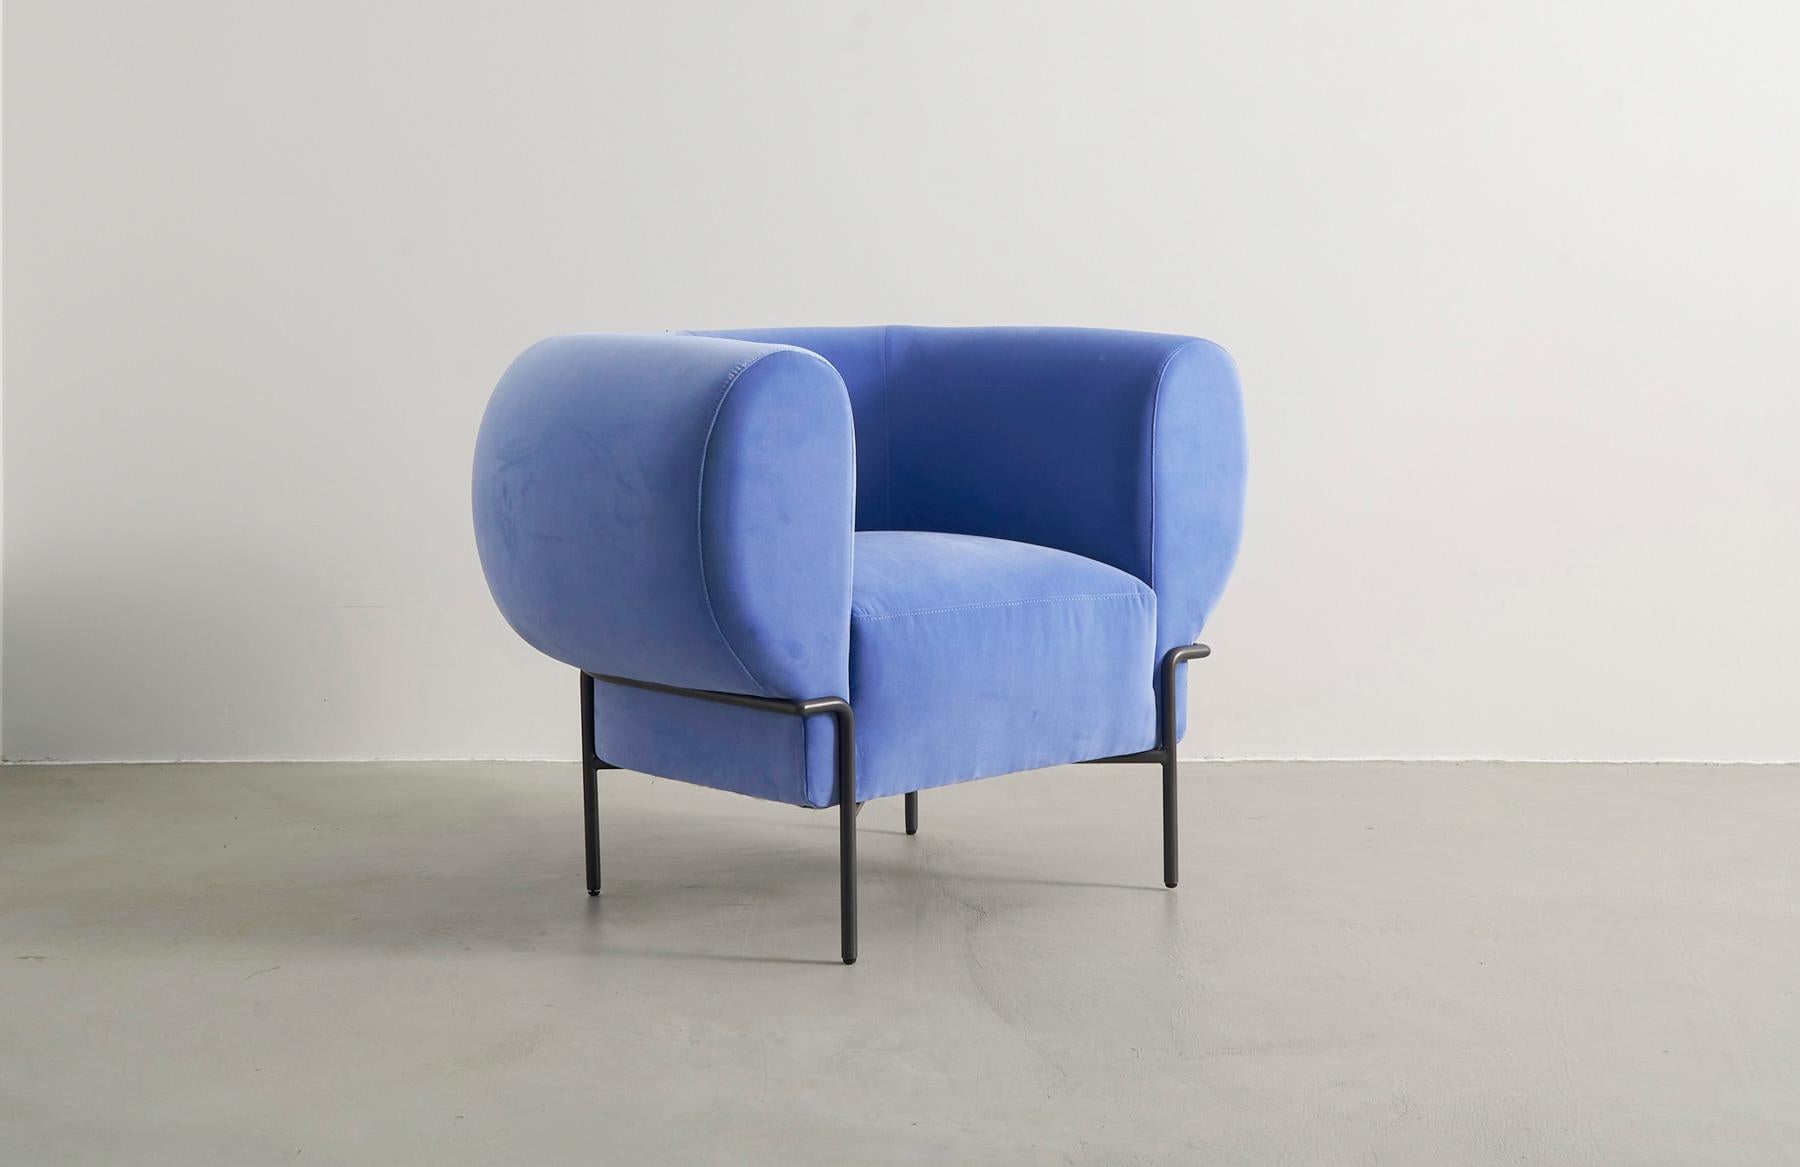 Der Madda von Michael Felix ist ein zeitgenössischer, moderner und minimalistischer Sessel aus Samt, inspiriert von der Interpretation klassischer Clubsessel aus der Mitte des Jahrhunderts. Der Metallfuß umschließt das pralle Kissen, als würde er